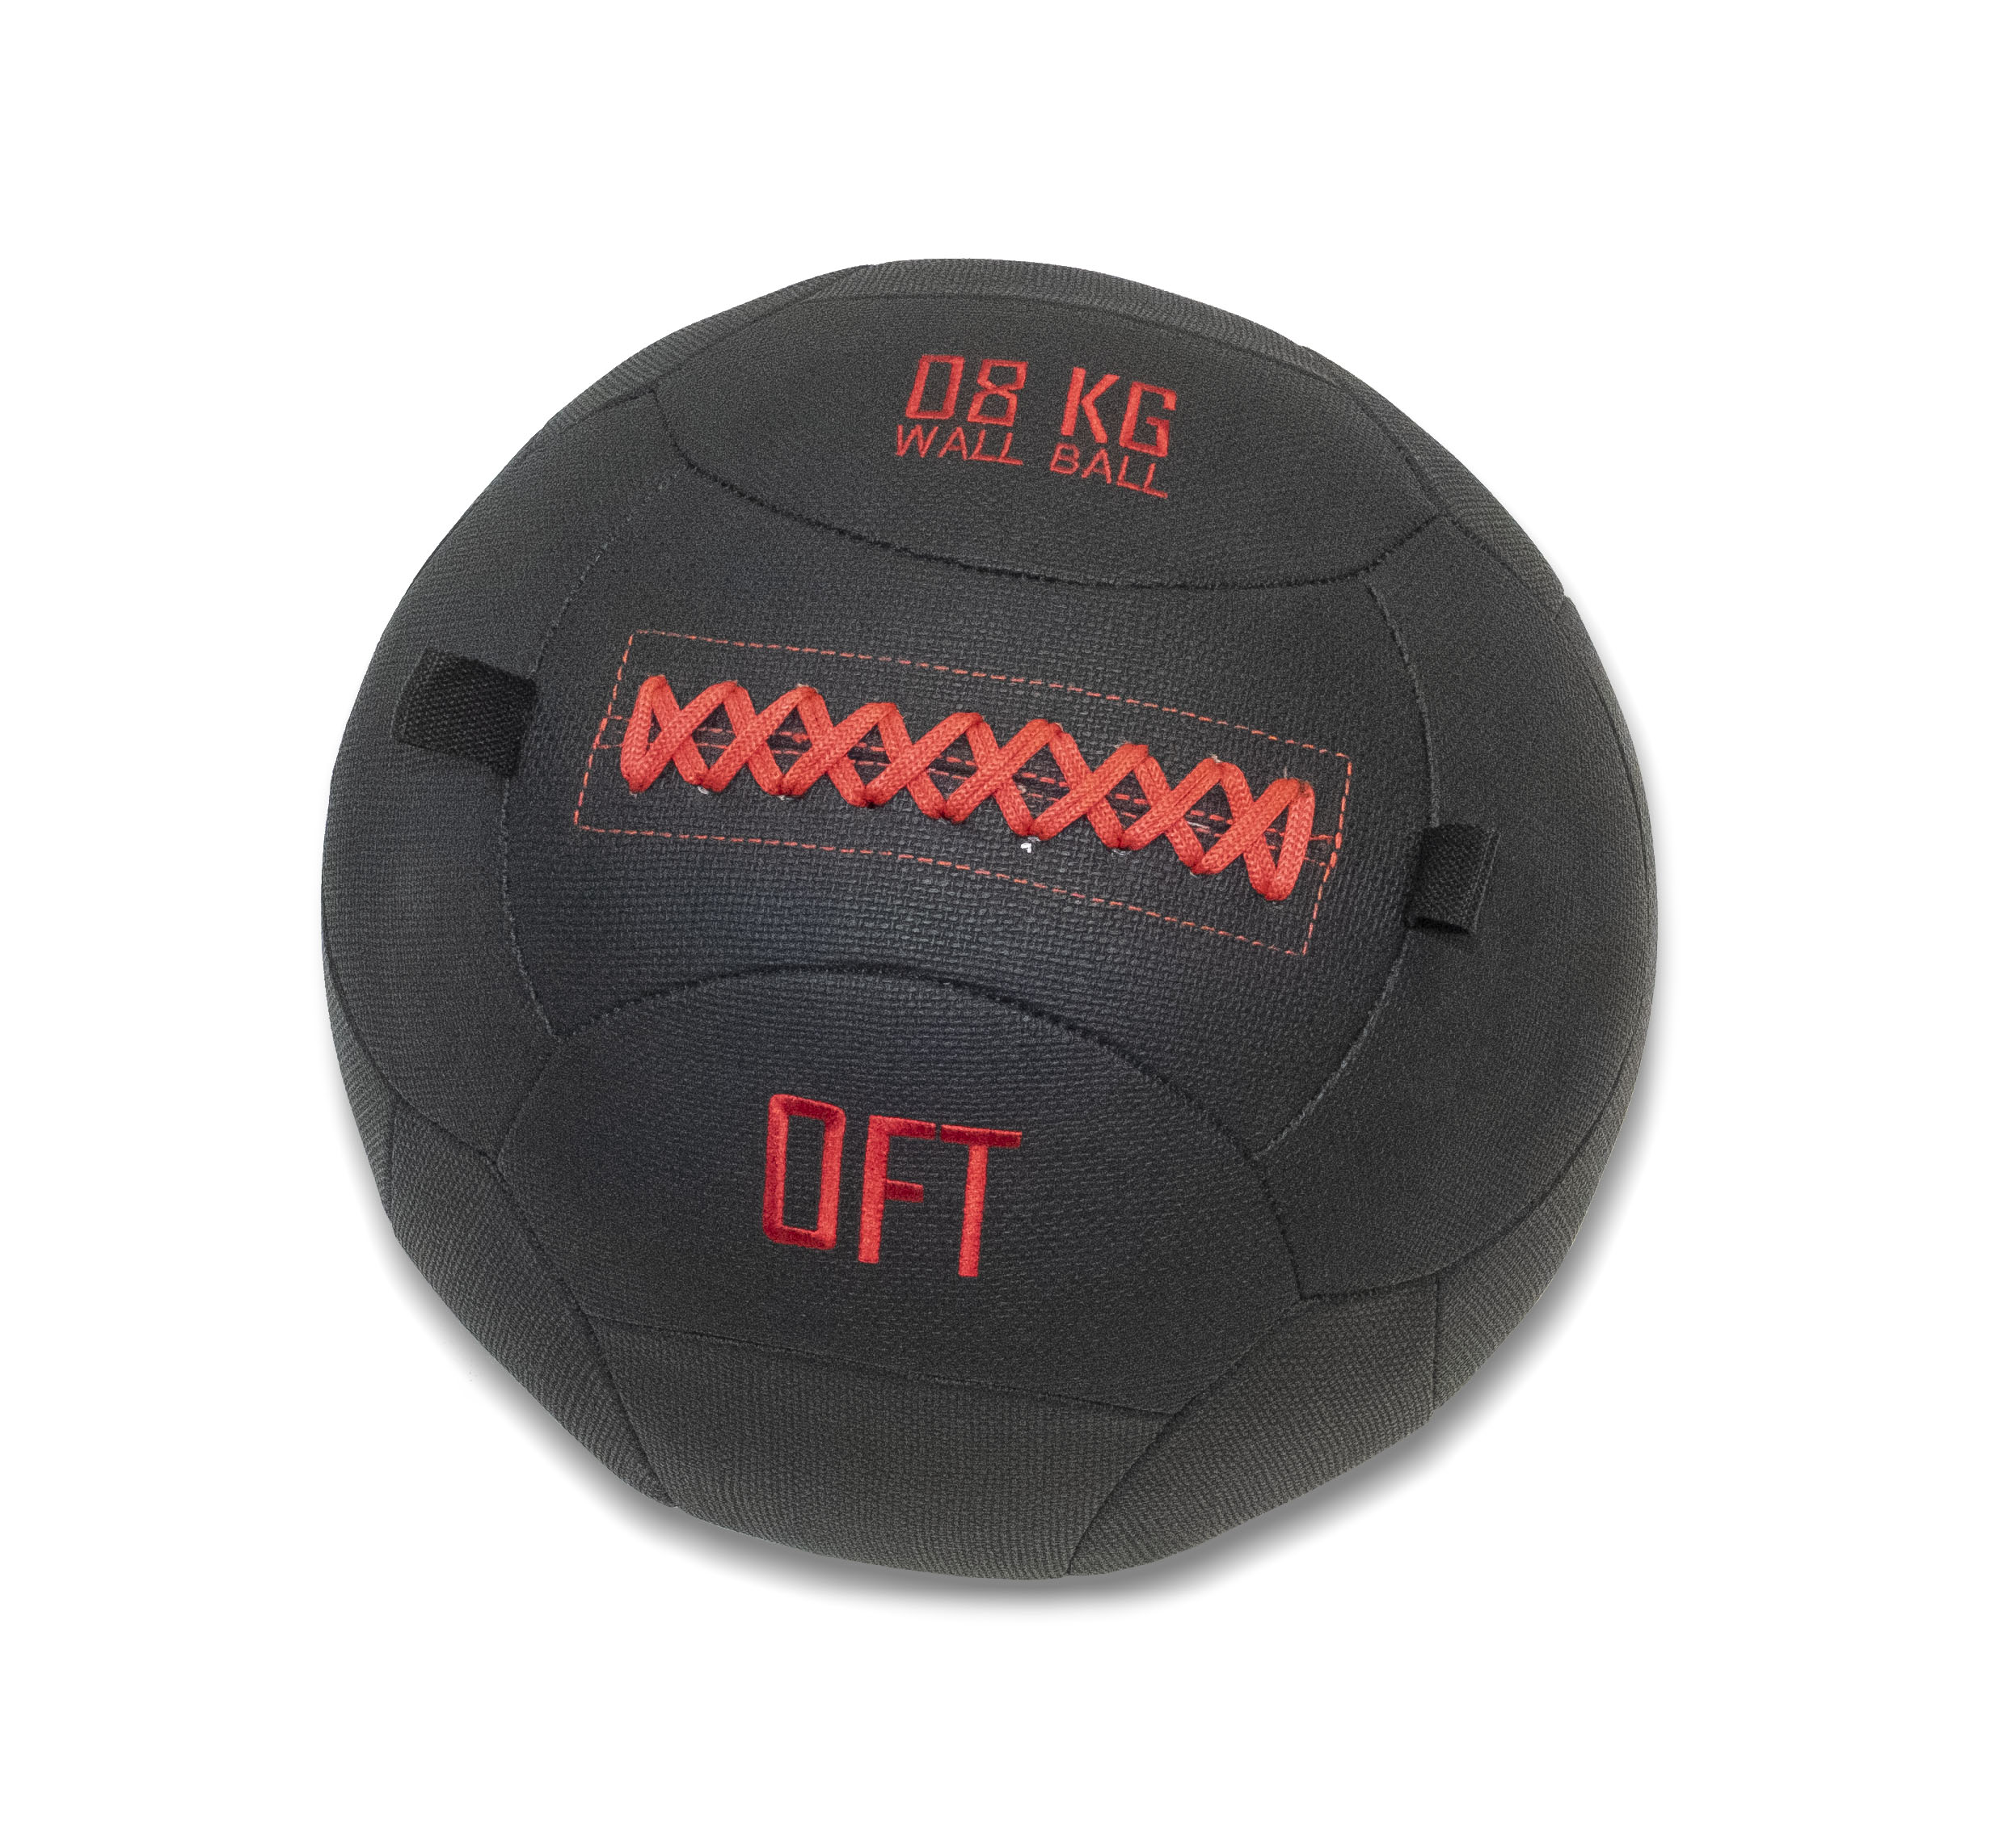 Тренировочный мяч Wall Ball Deluxe 8 кг Original FitTools